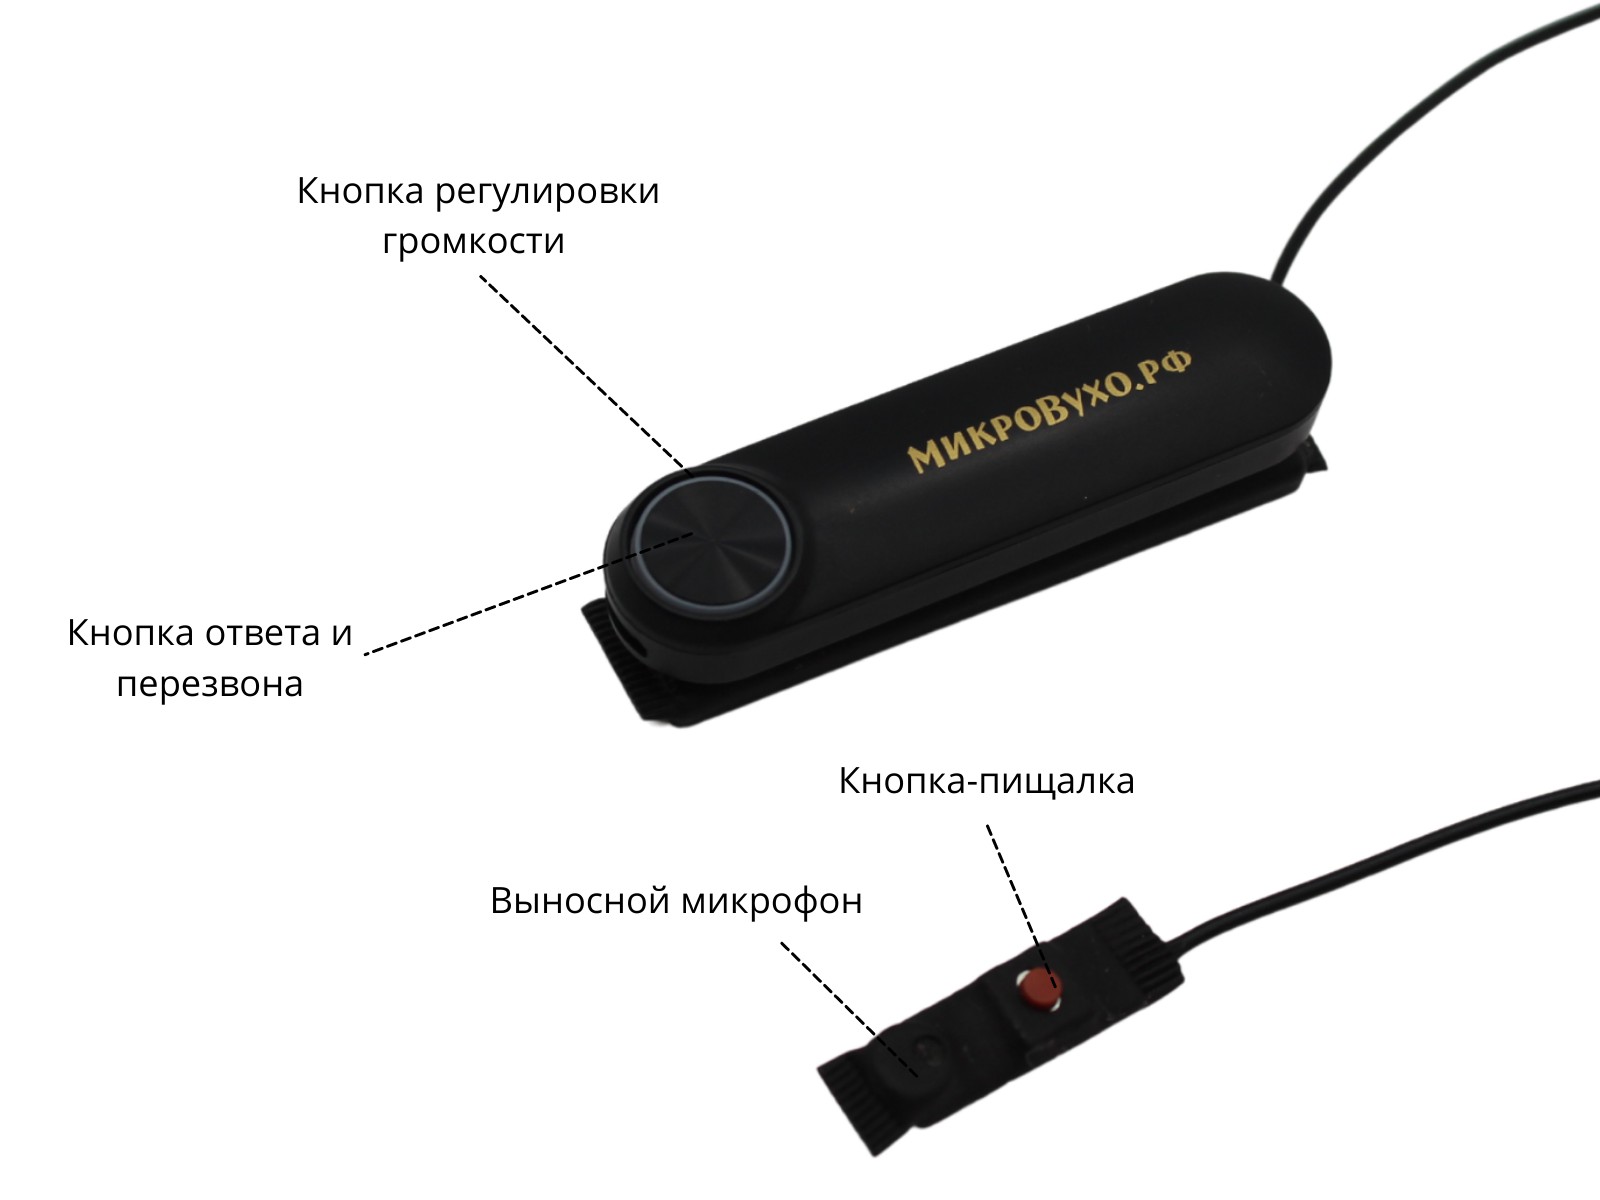 Универсальная гарнитура Bluetooth Box Standard Plus с капсулой К5 4 мм и магнитами 2 мм